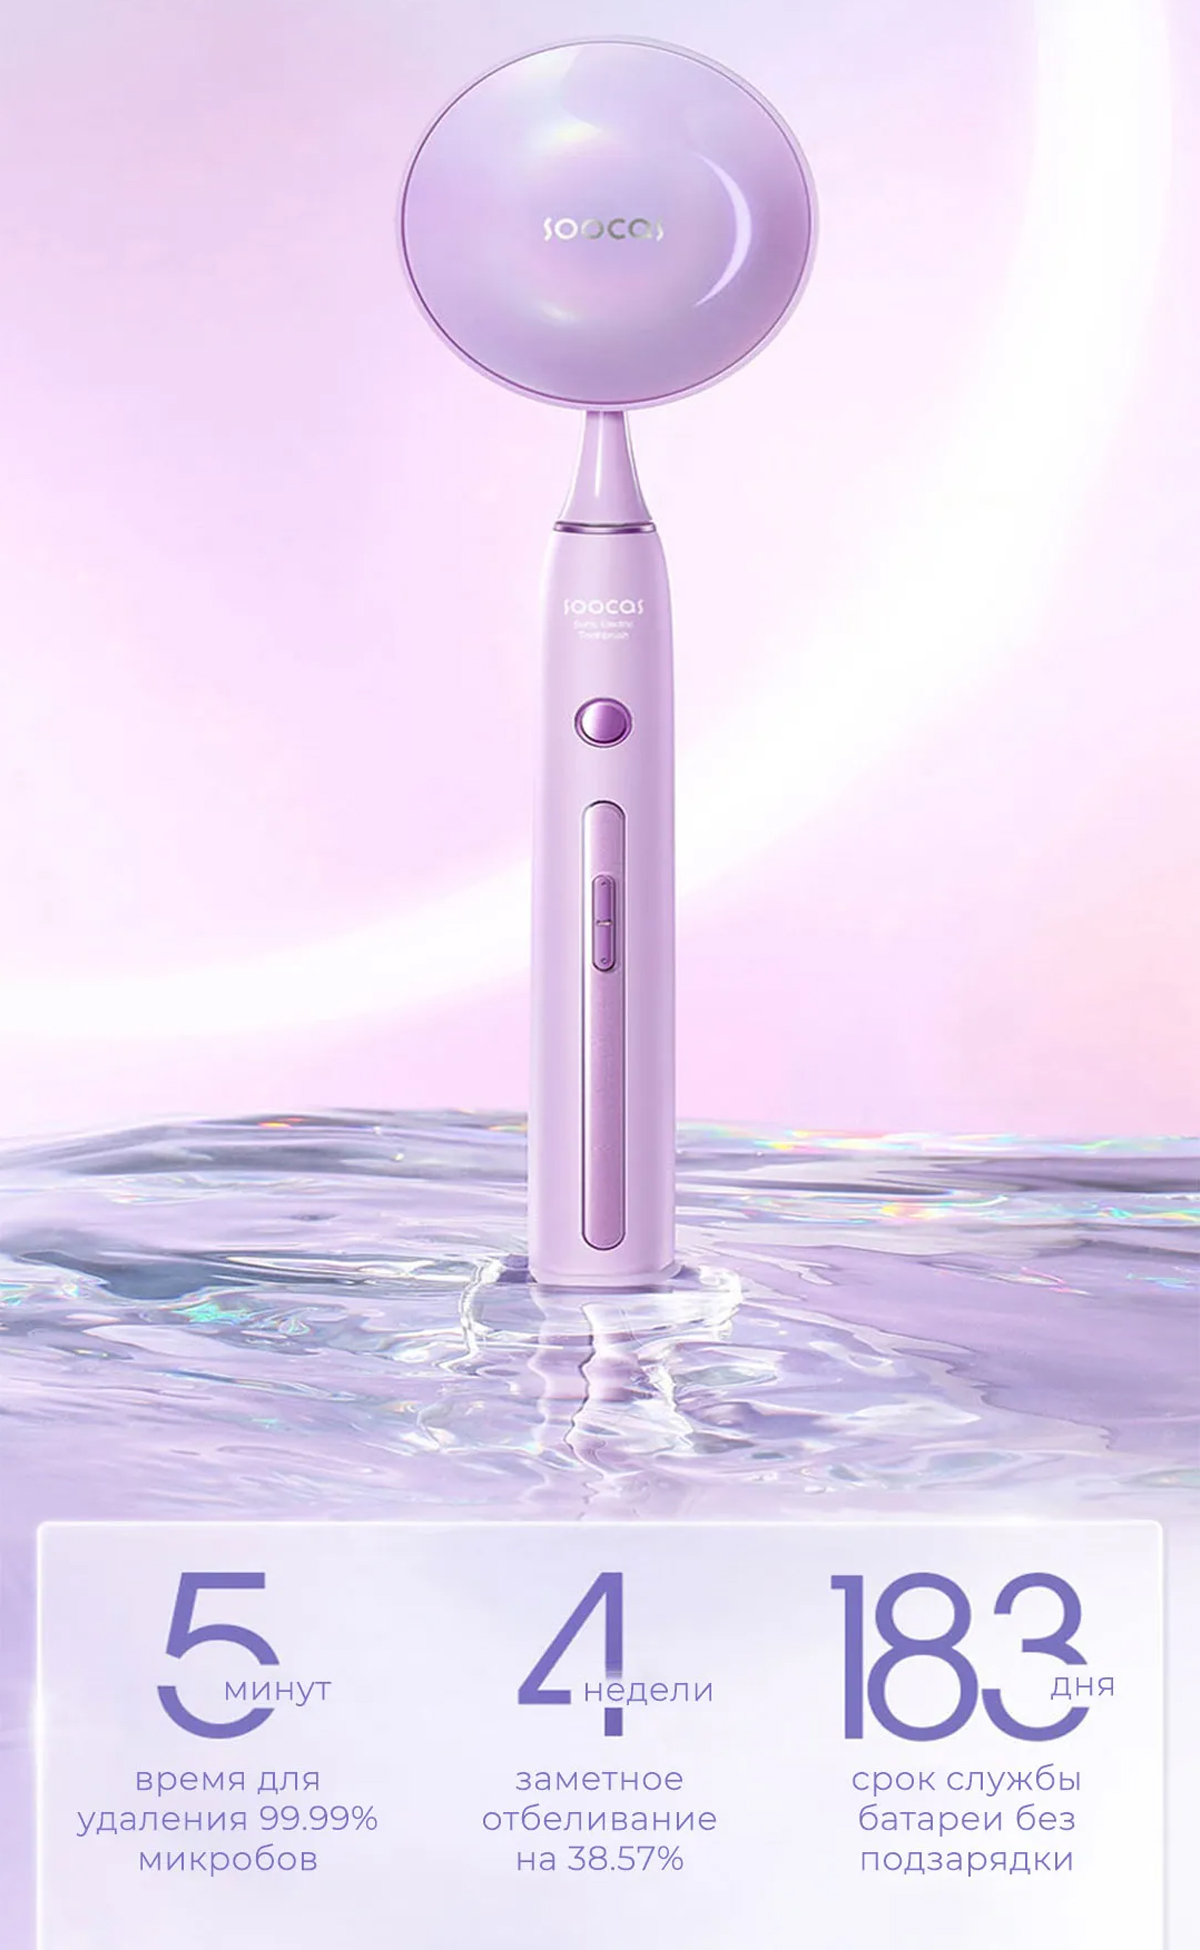 Электрическая зубная щётка Soocas X3 Pro Smart Electric Toothbrush